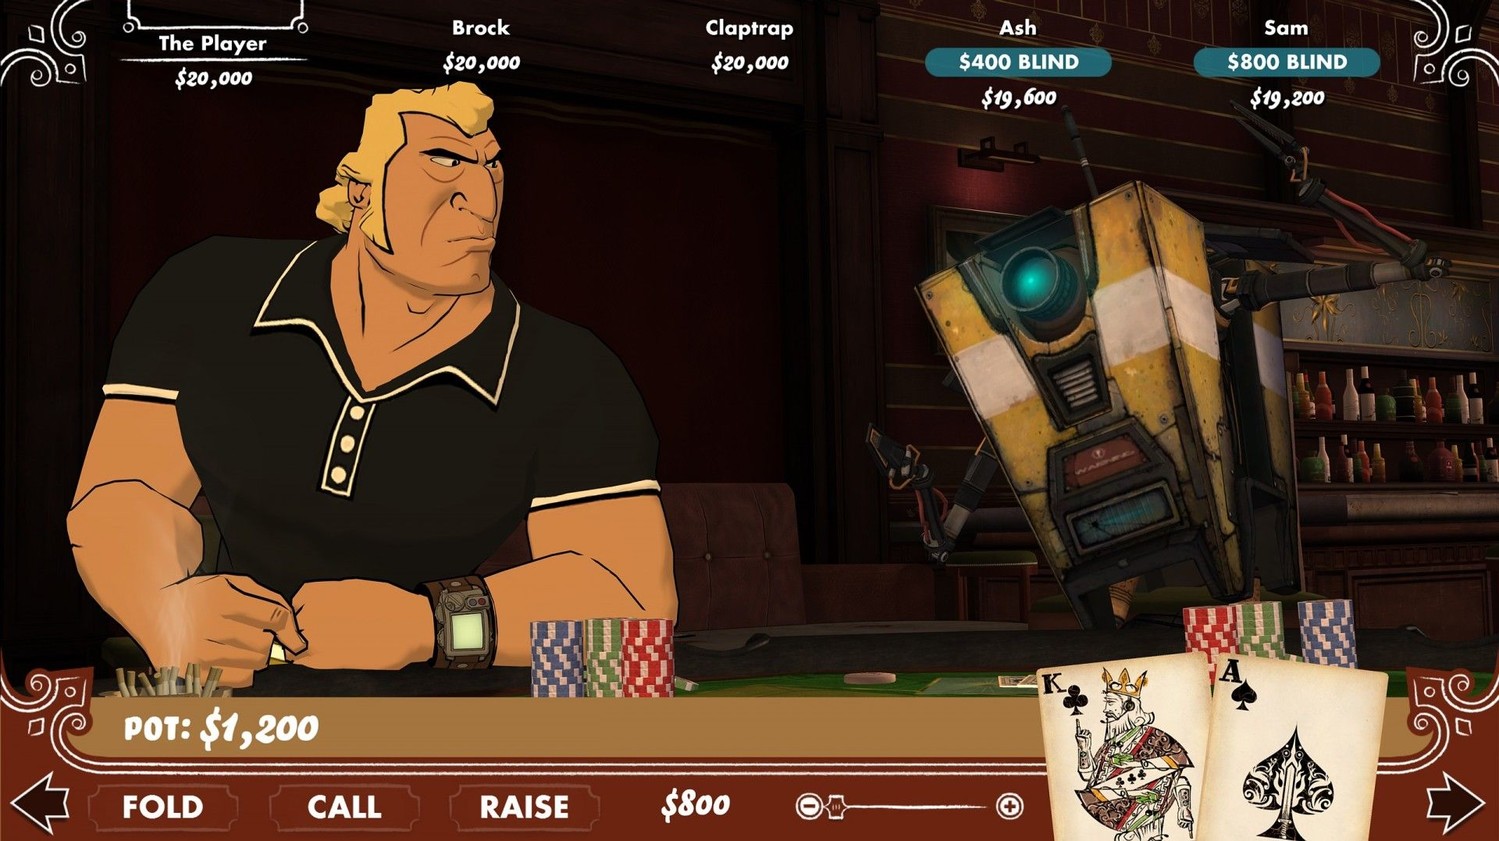 Скриншот 2 к игре Poker Night 2 (2013) PC | RePack от xatab